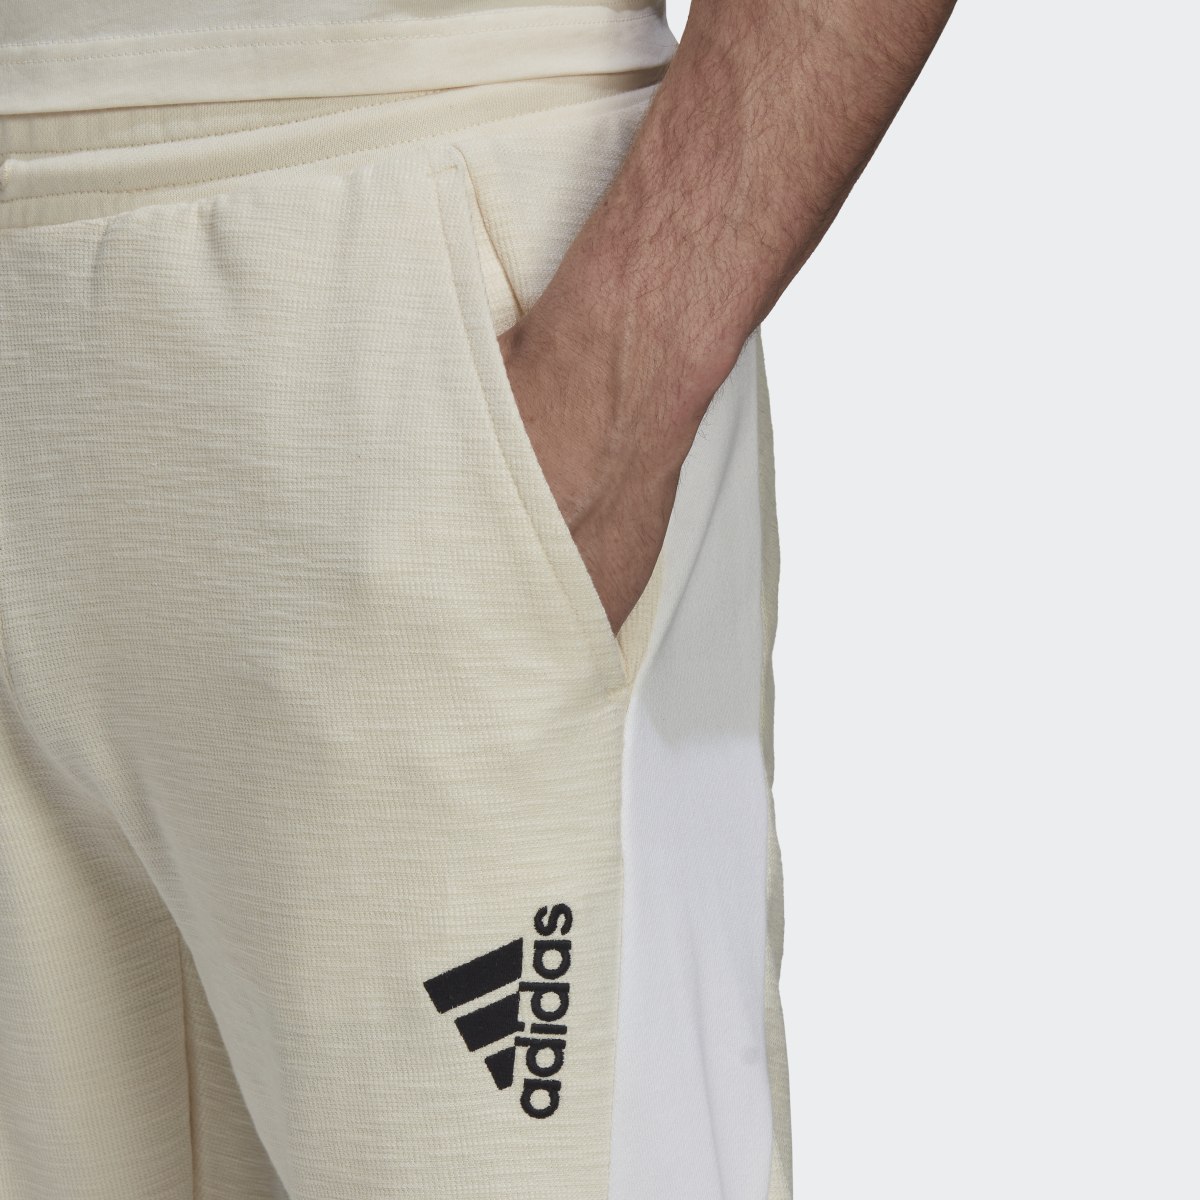 Adidas Pantalon tissé (Non genré). 6